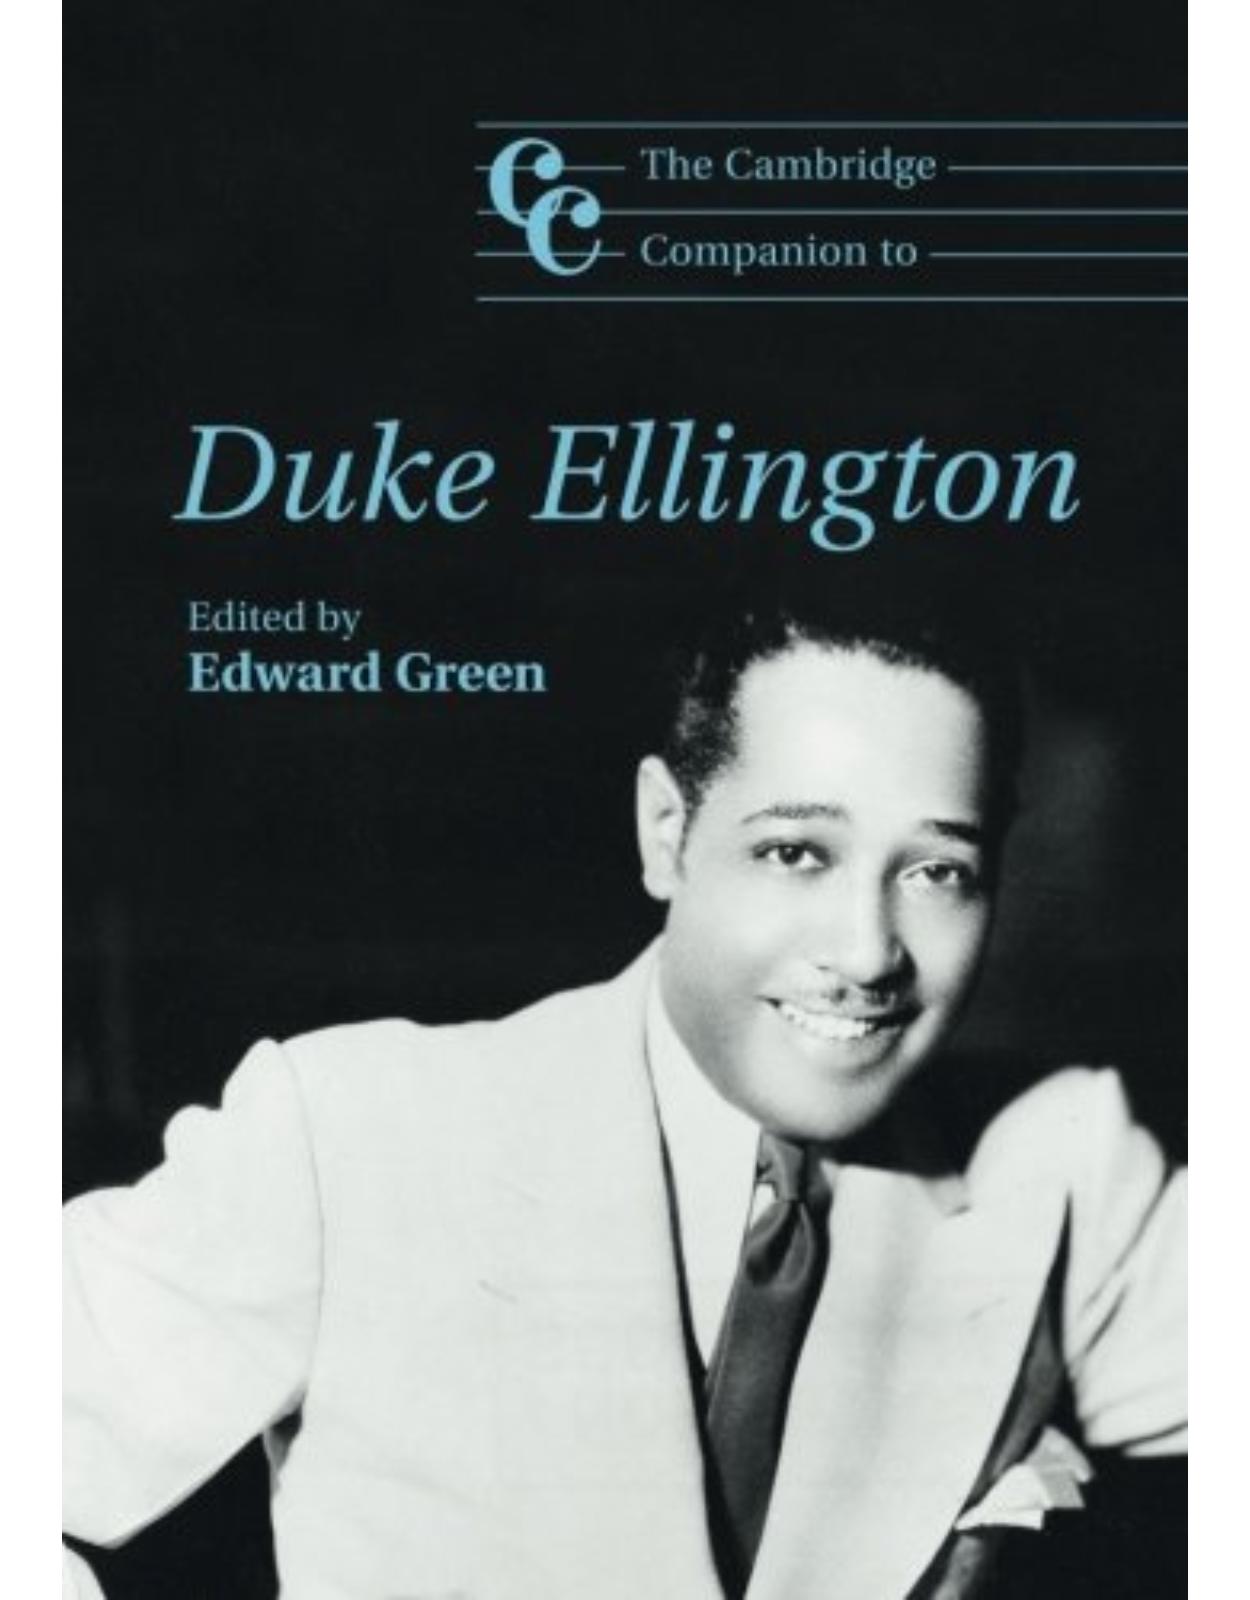 The Cambridge Companion to Duke Ellington (Cambridge Companions to Music)